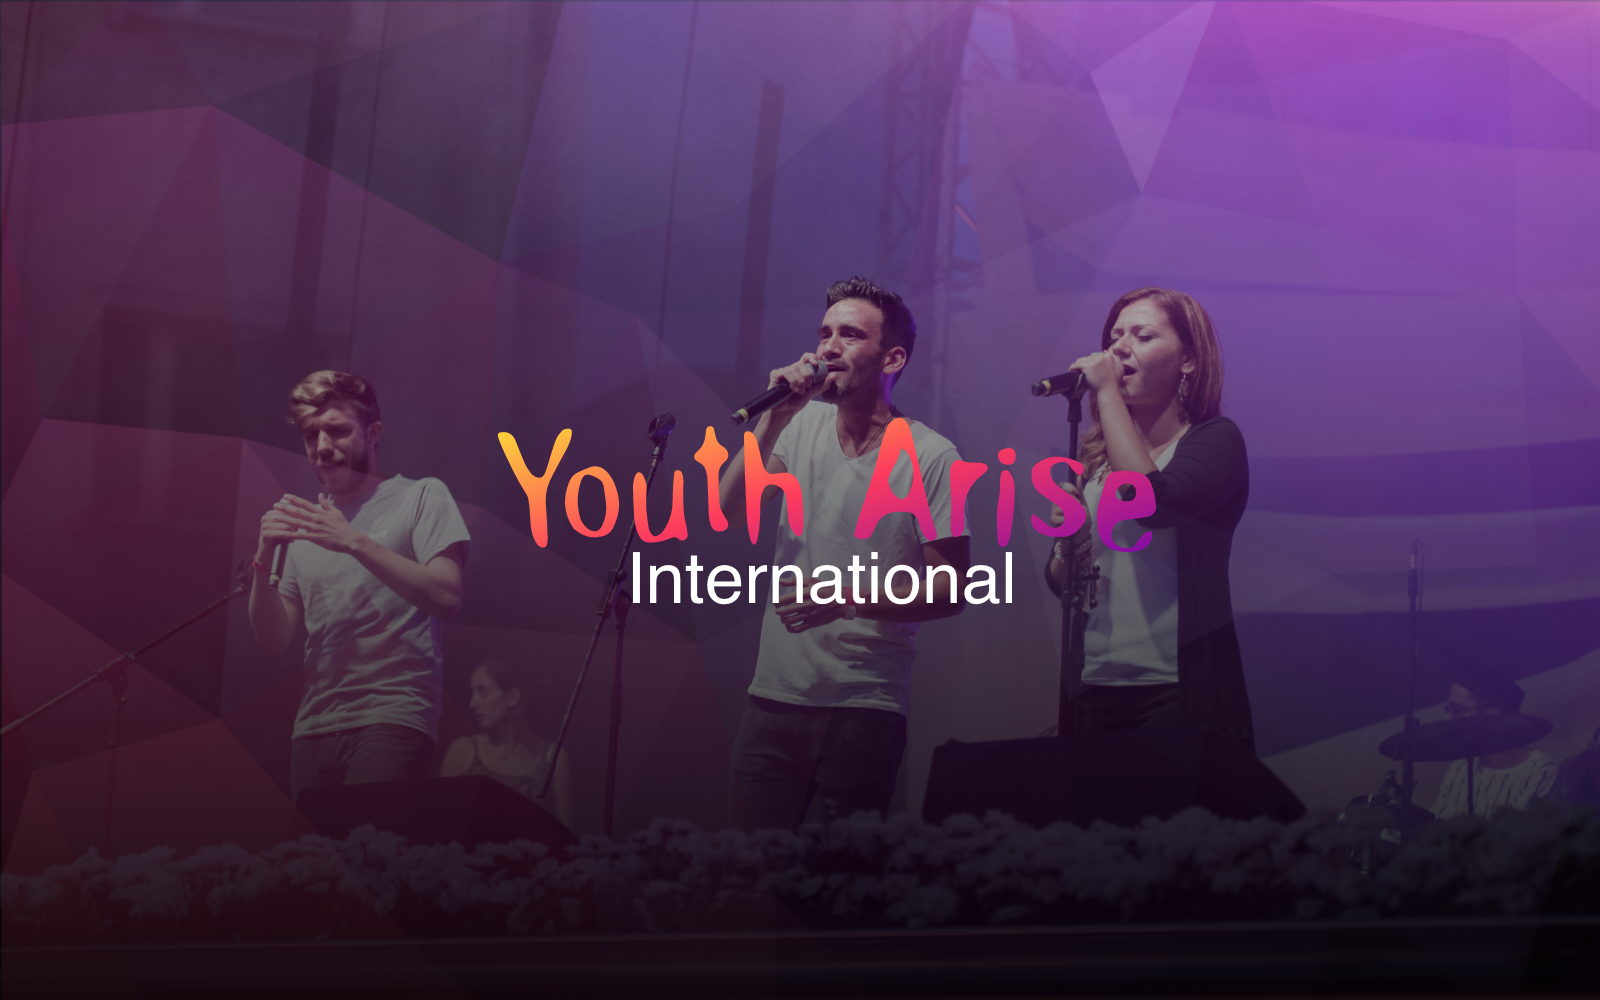 Youth Arise International Image